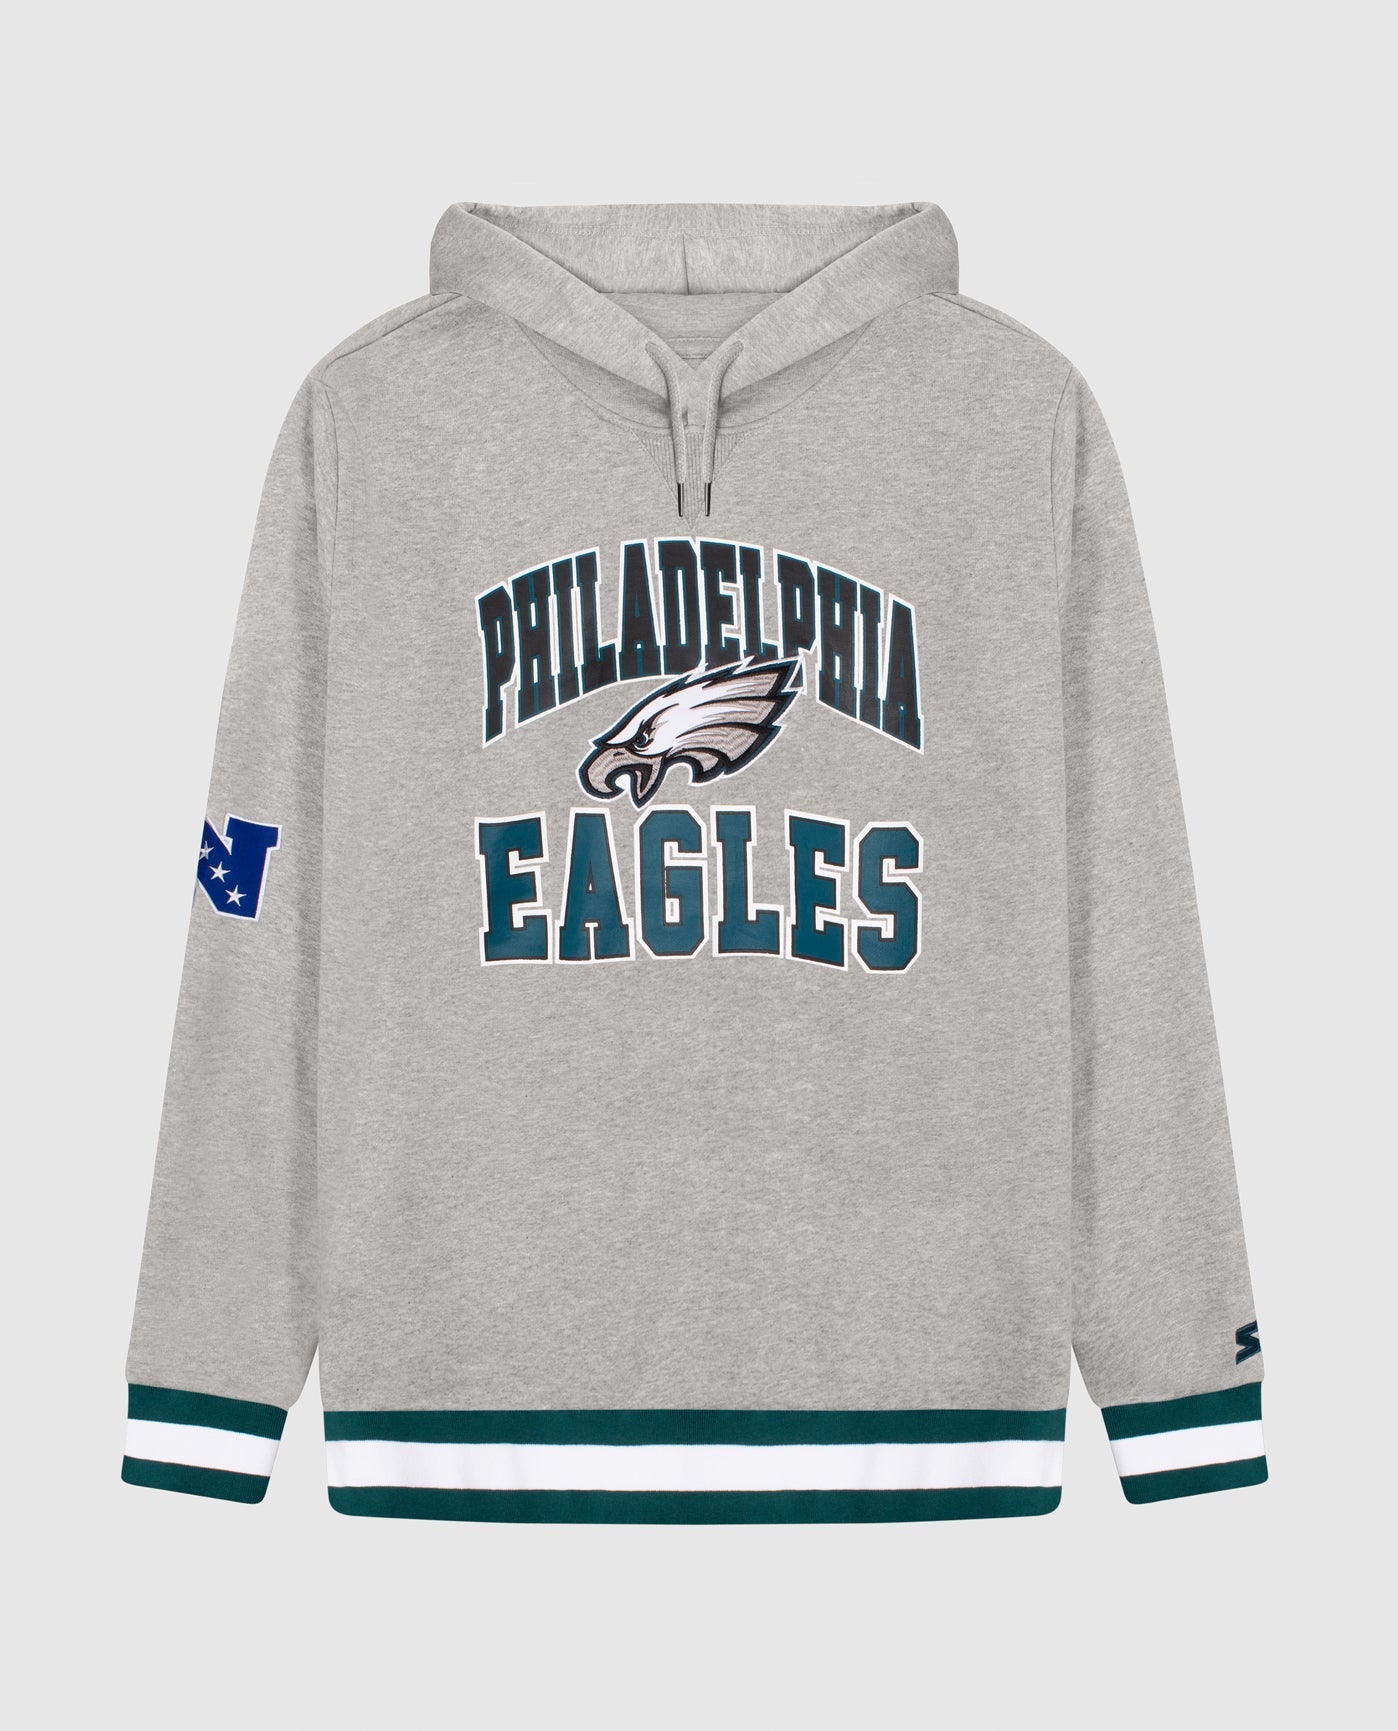 Philadelphia Eagles Starter Jackets , Eagles Pullover Starter